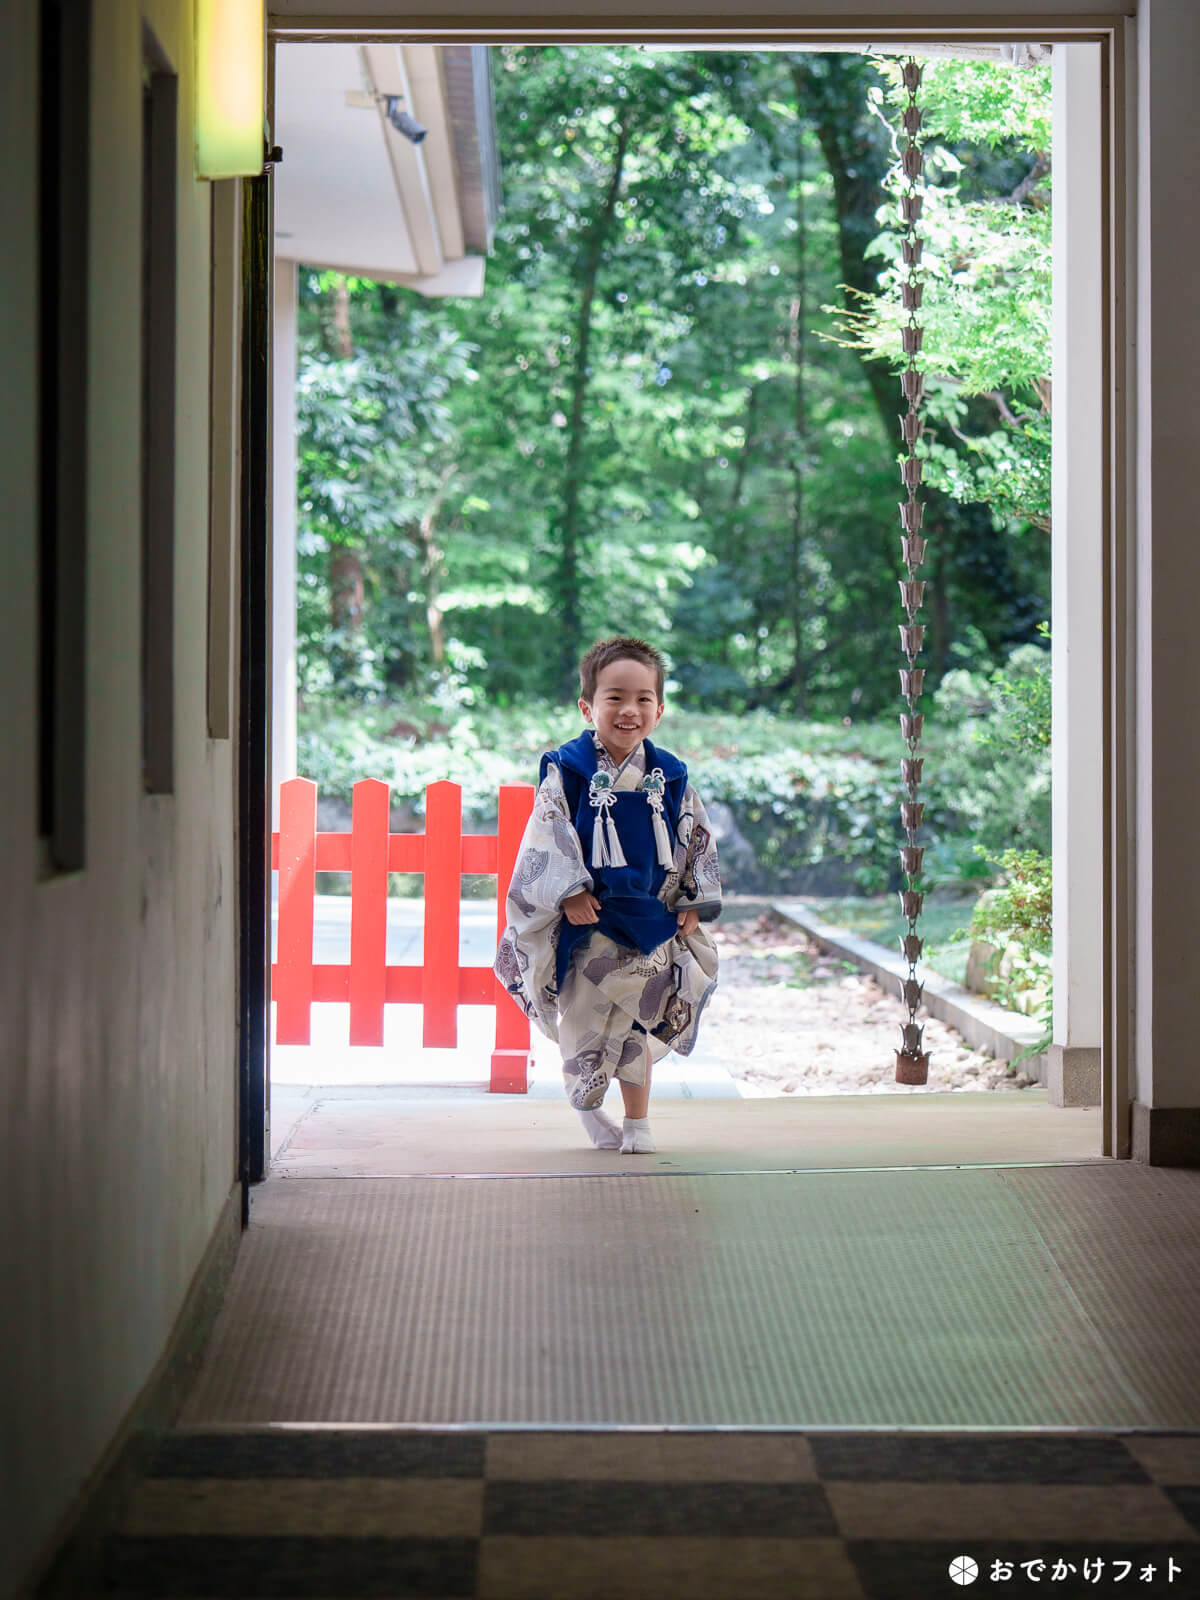 福岡縣護国神社で七五三写真の出張撮影